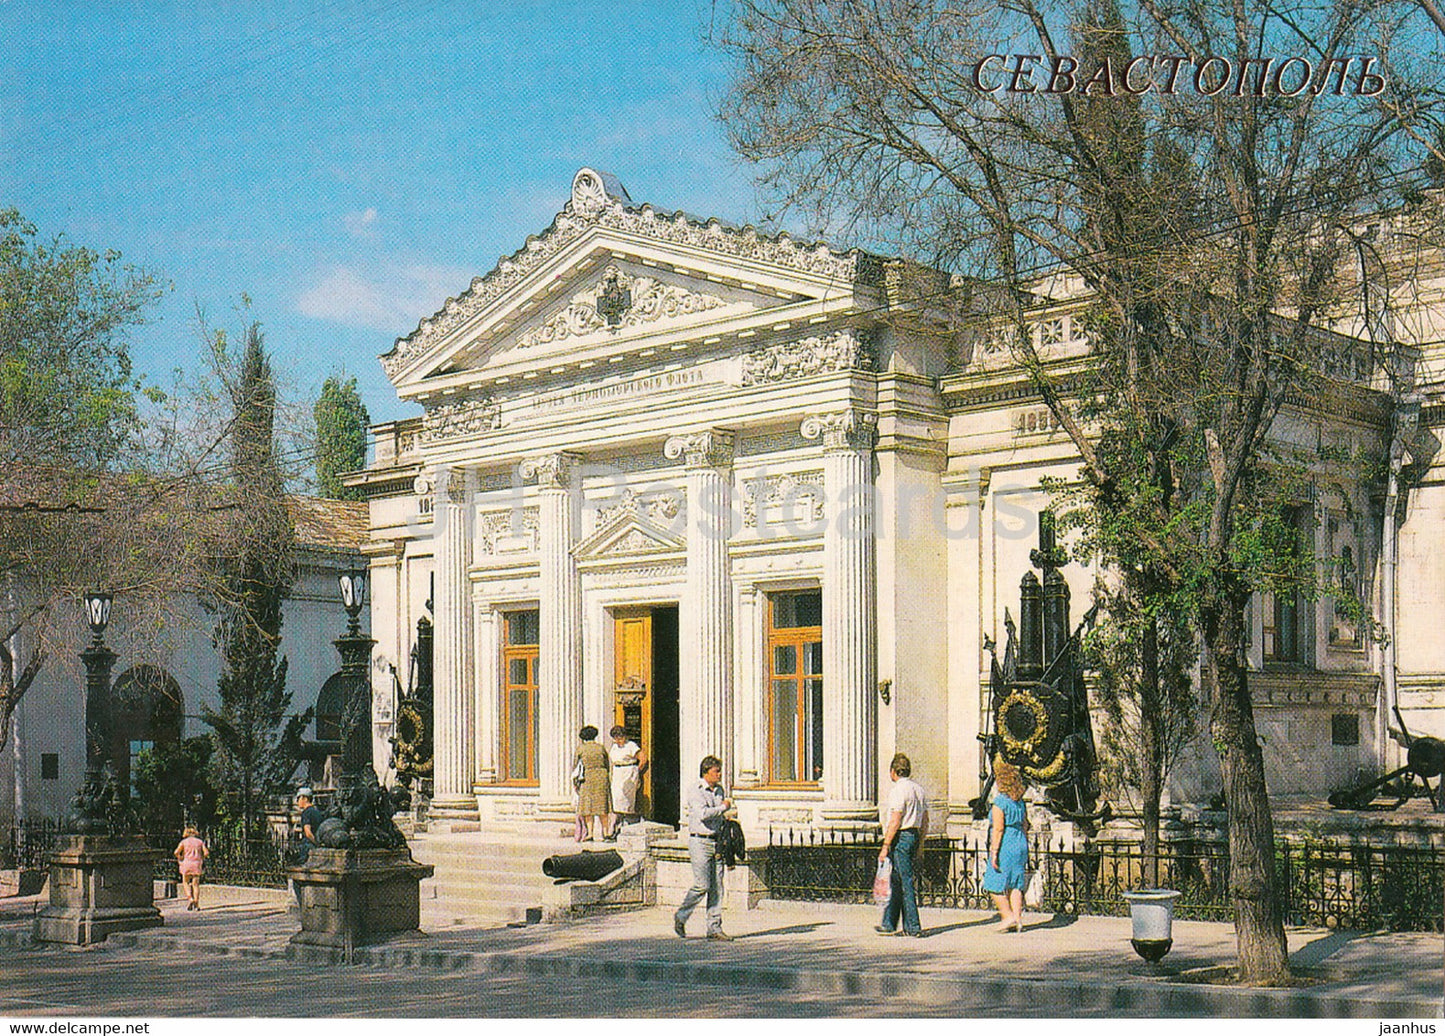 Sevastopol - Museum of the Black Sea Fleet - 1989 - Ukraine USSR - unused - JH Postcards